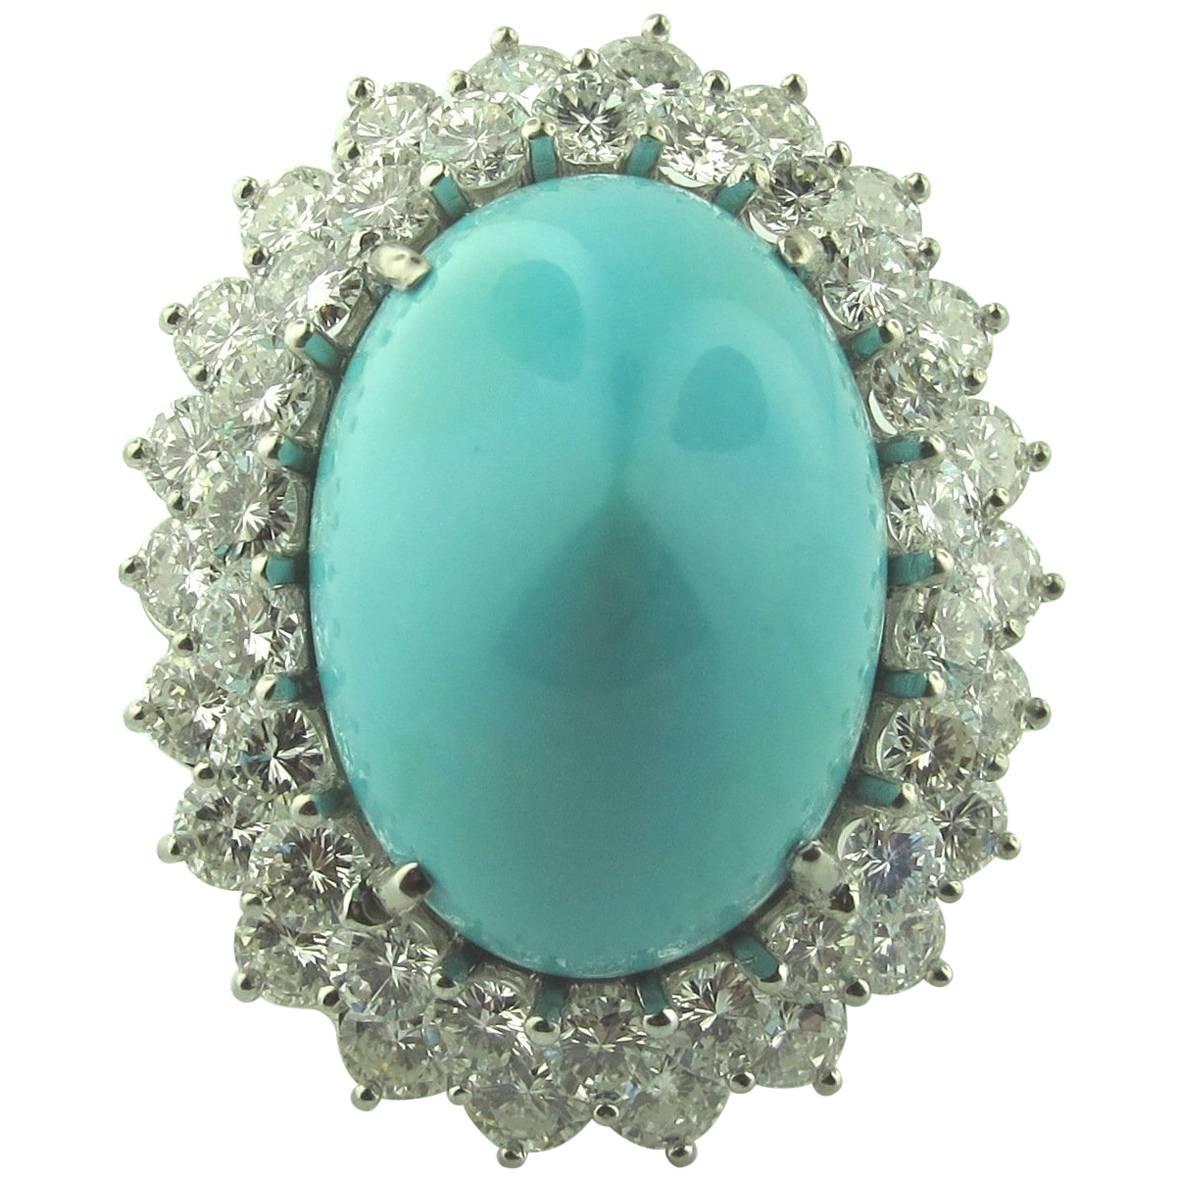  Sugarloaf Persian Turquoise Diamond 18 Karat White Gold Ring